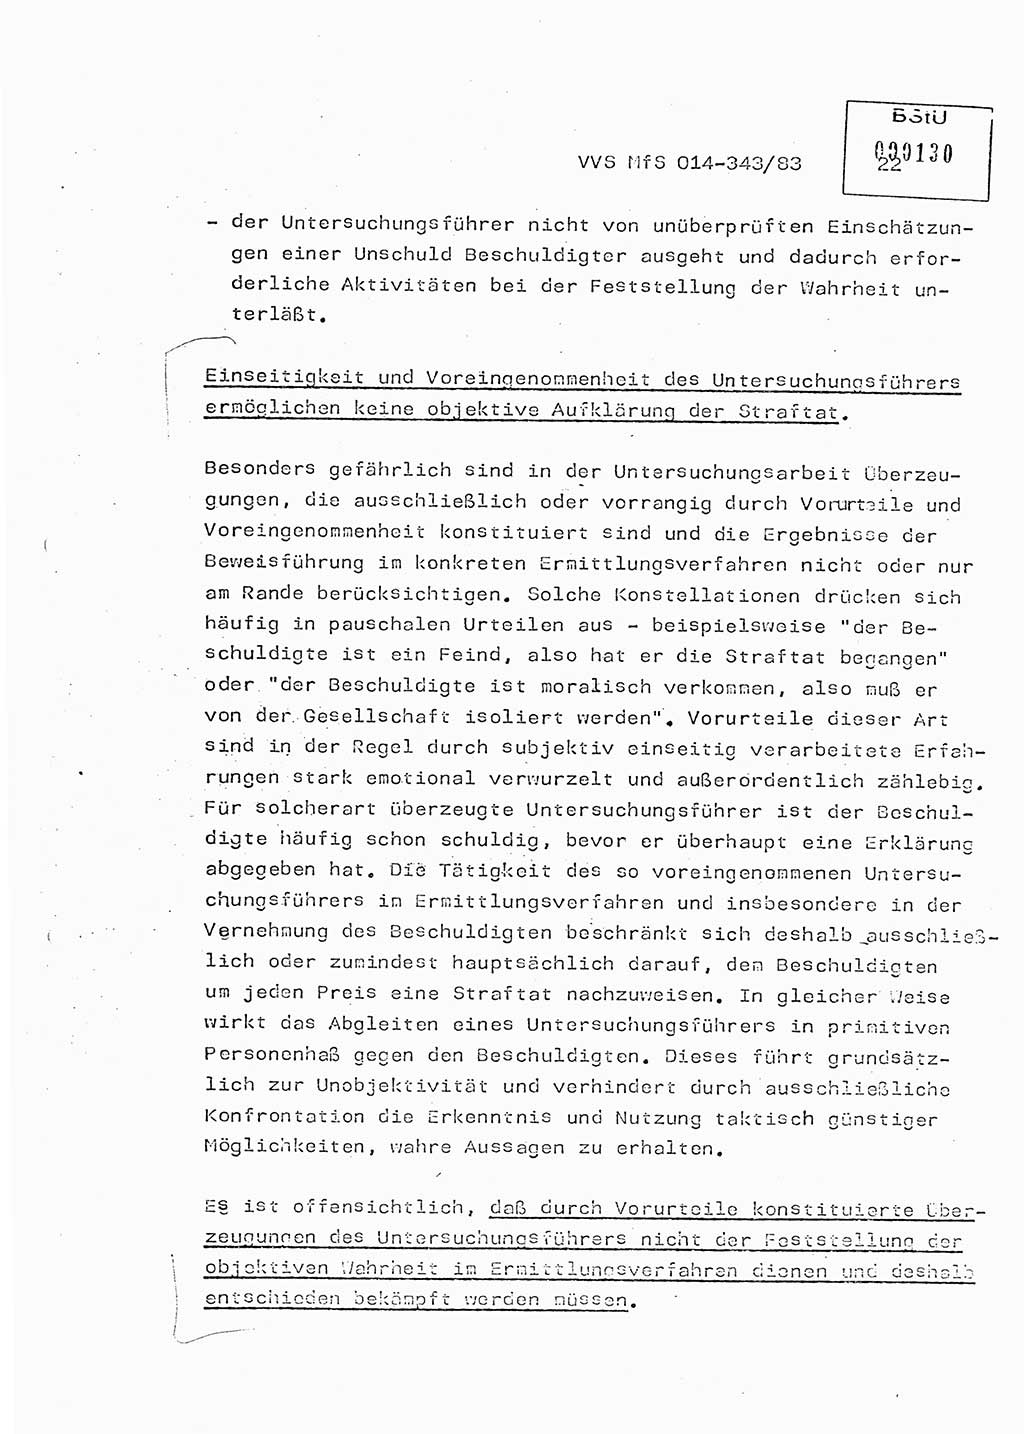 Lektion Ministerium für Staatssicherheit (MfS) [Deutsche Demokratische Republik (DDR)], Hauptabteilung (HA) Ⅸ, Vertrauliche Verschlußsache (VVS) o014-343/83, Berlin 1983, Seite 22 (Lekt. MfS DDR HA Ⅸ VVS o014-343/83 1983, S. 22)